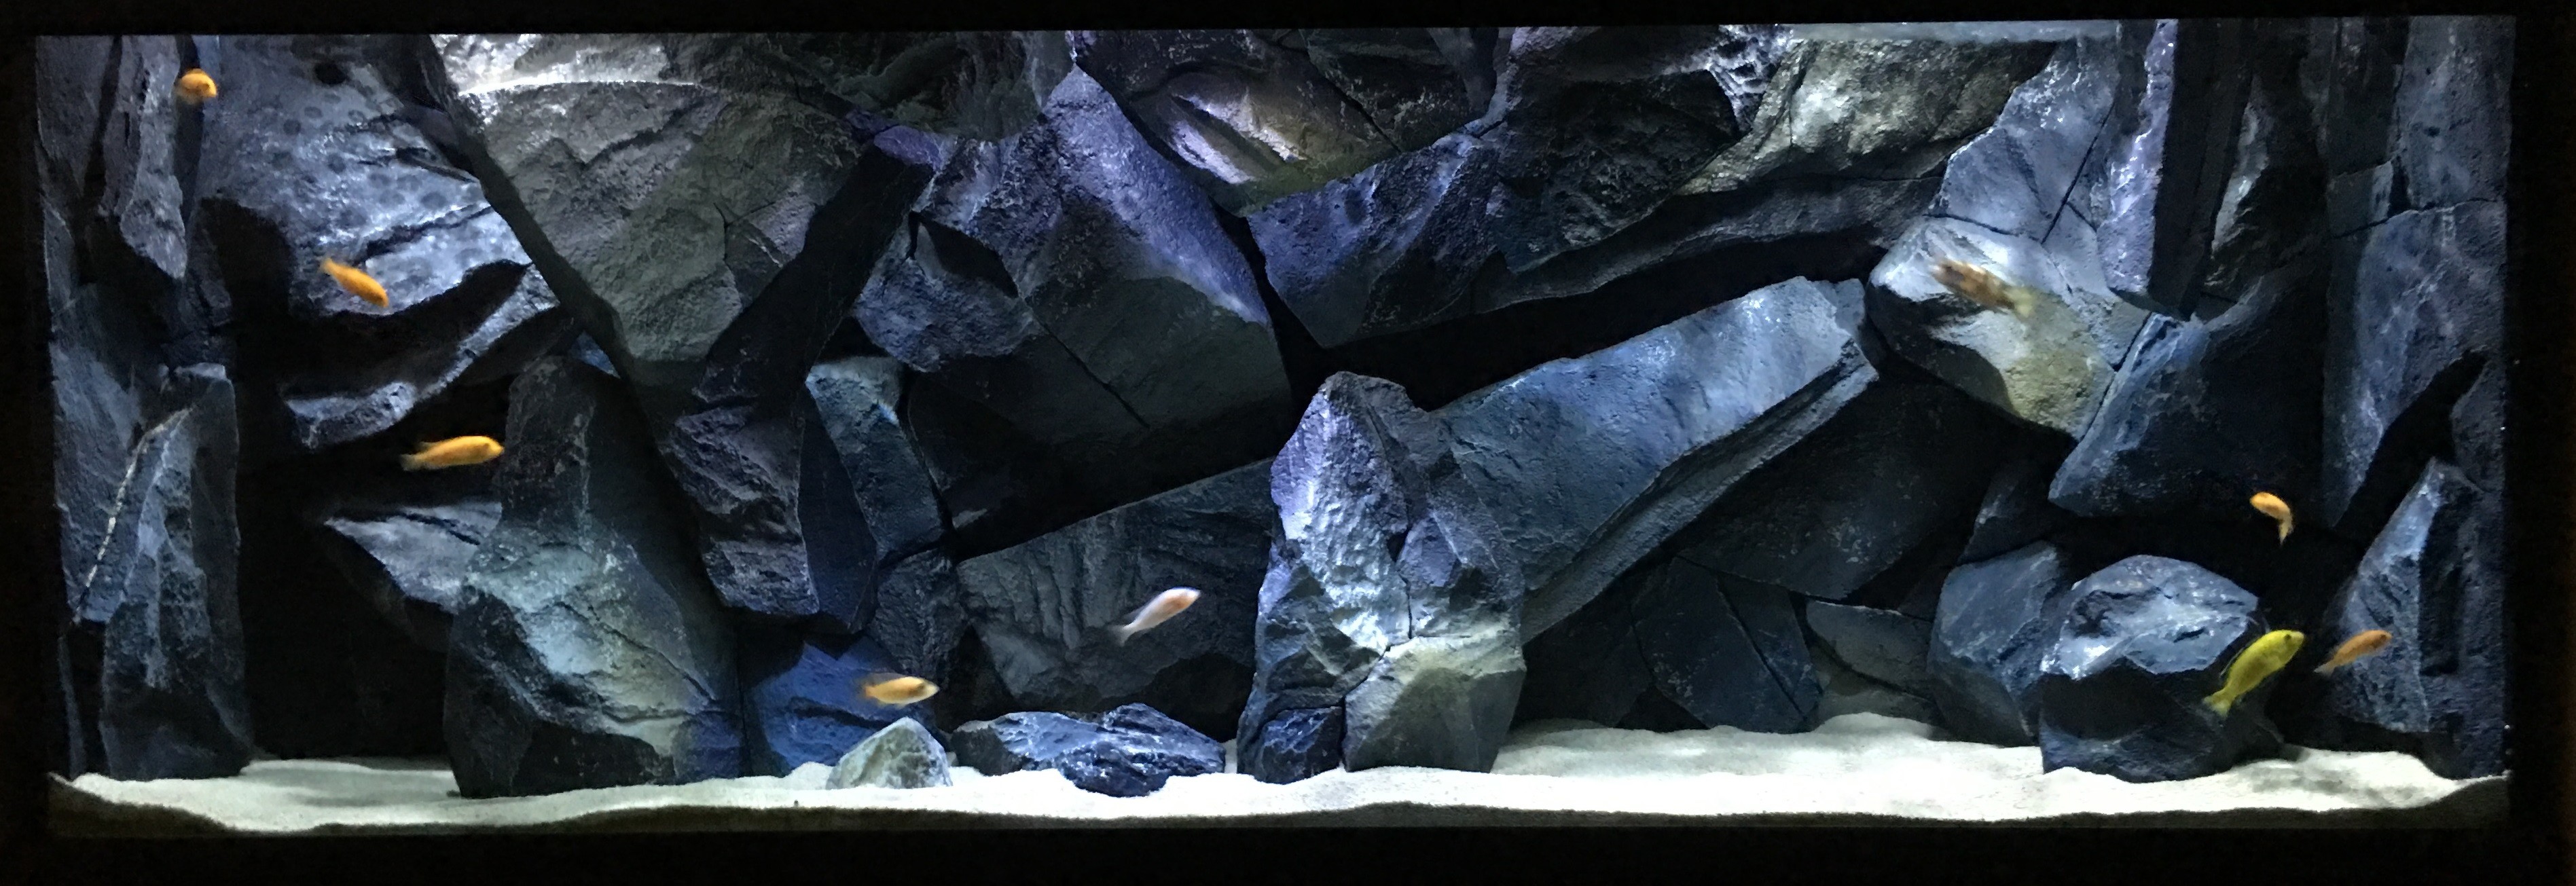 3793x1305 3D Backgrounds | NatureDecor | 3D Aquarium Backgrounds & Fish Tank  Decorations